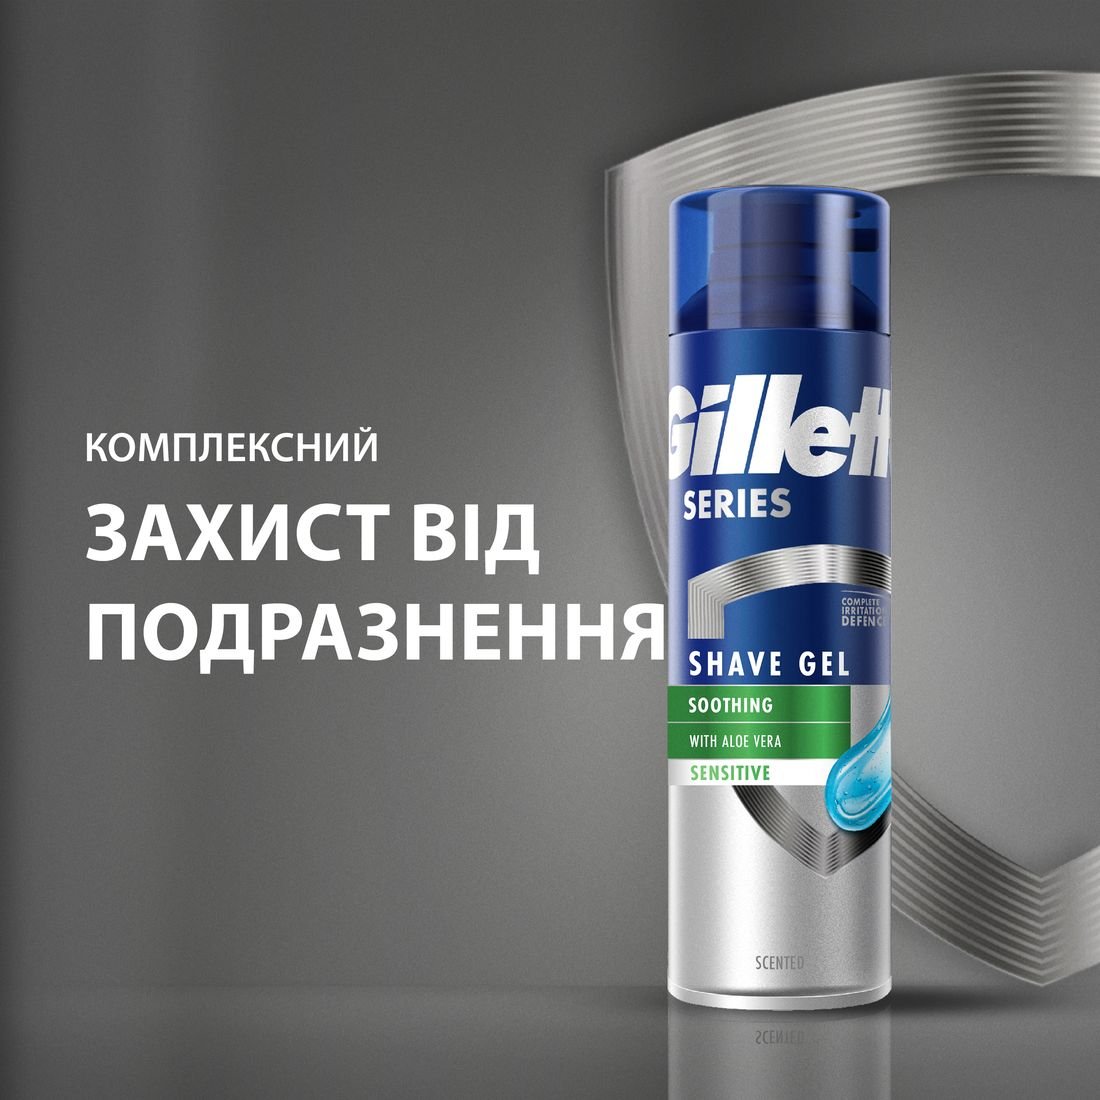 Гель для бритья Gillette Series для чувствительной кожи, с алоэ вера, 240 мл - фото 7